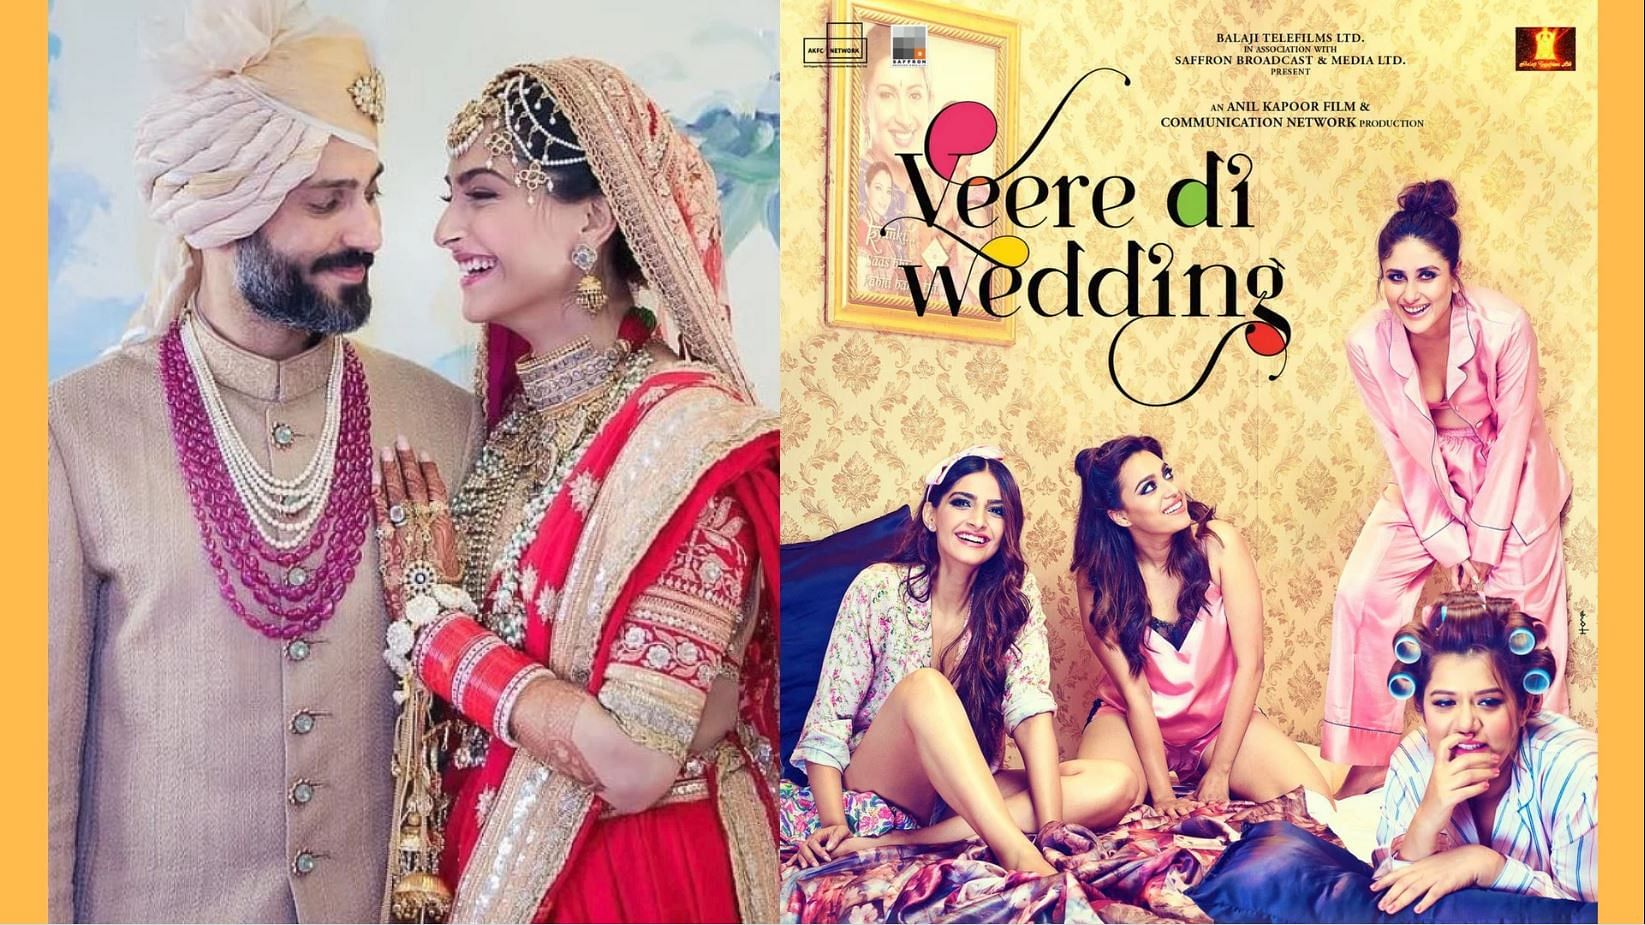 सोनम कपूर और आनंद आहूजा की शादी फिल्म ‘वीरे दी वेडिंग’ के रिलीज से कुछ हफ्ते पहले ही हुई है.